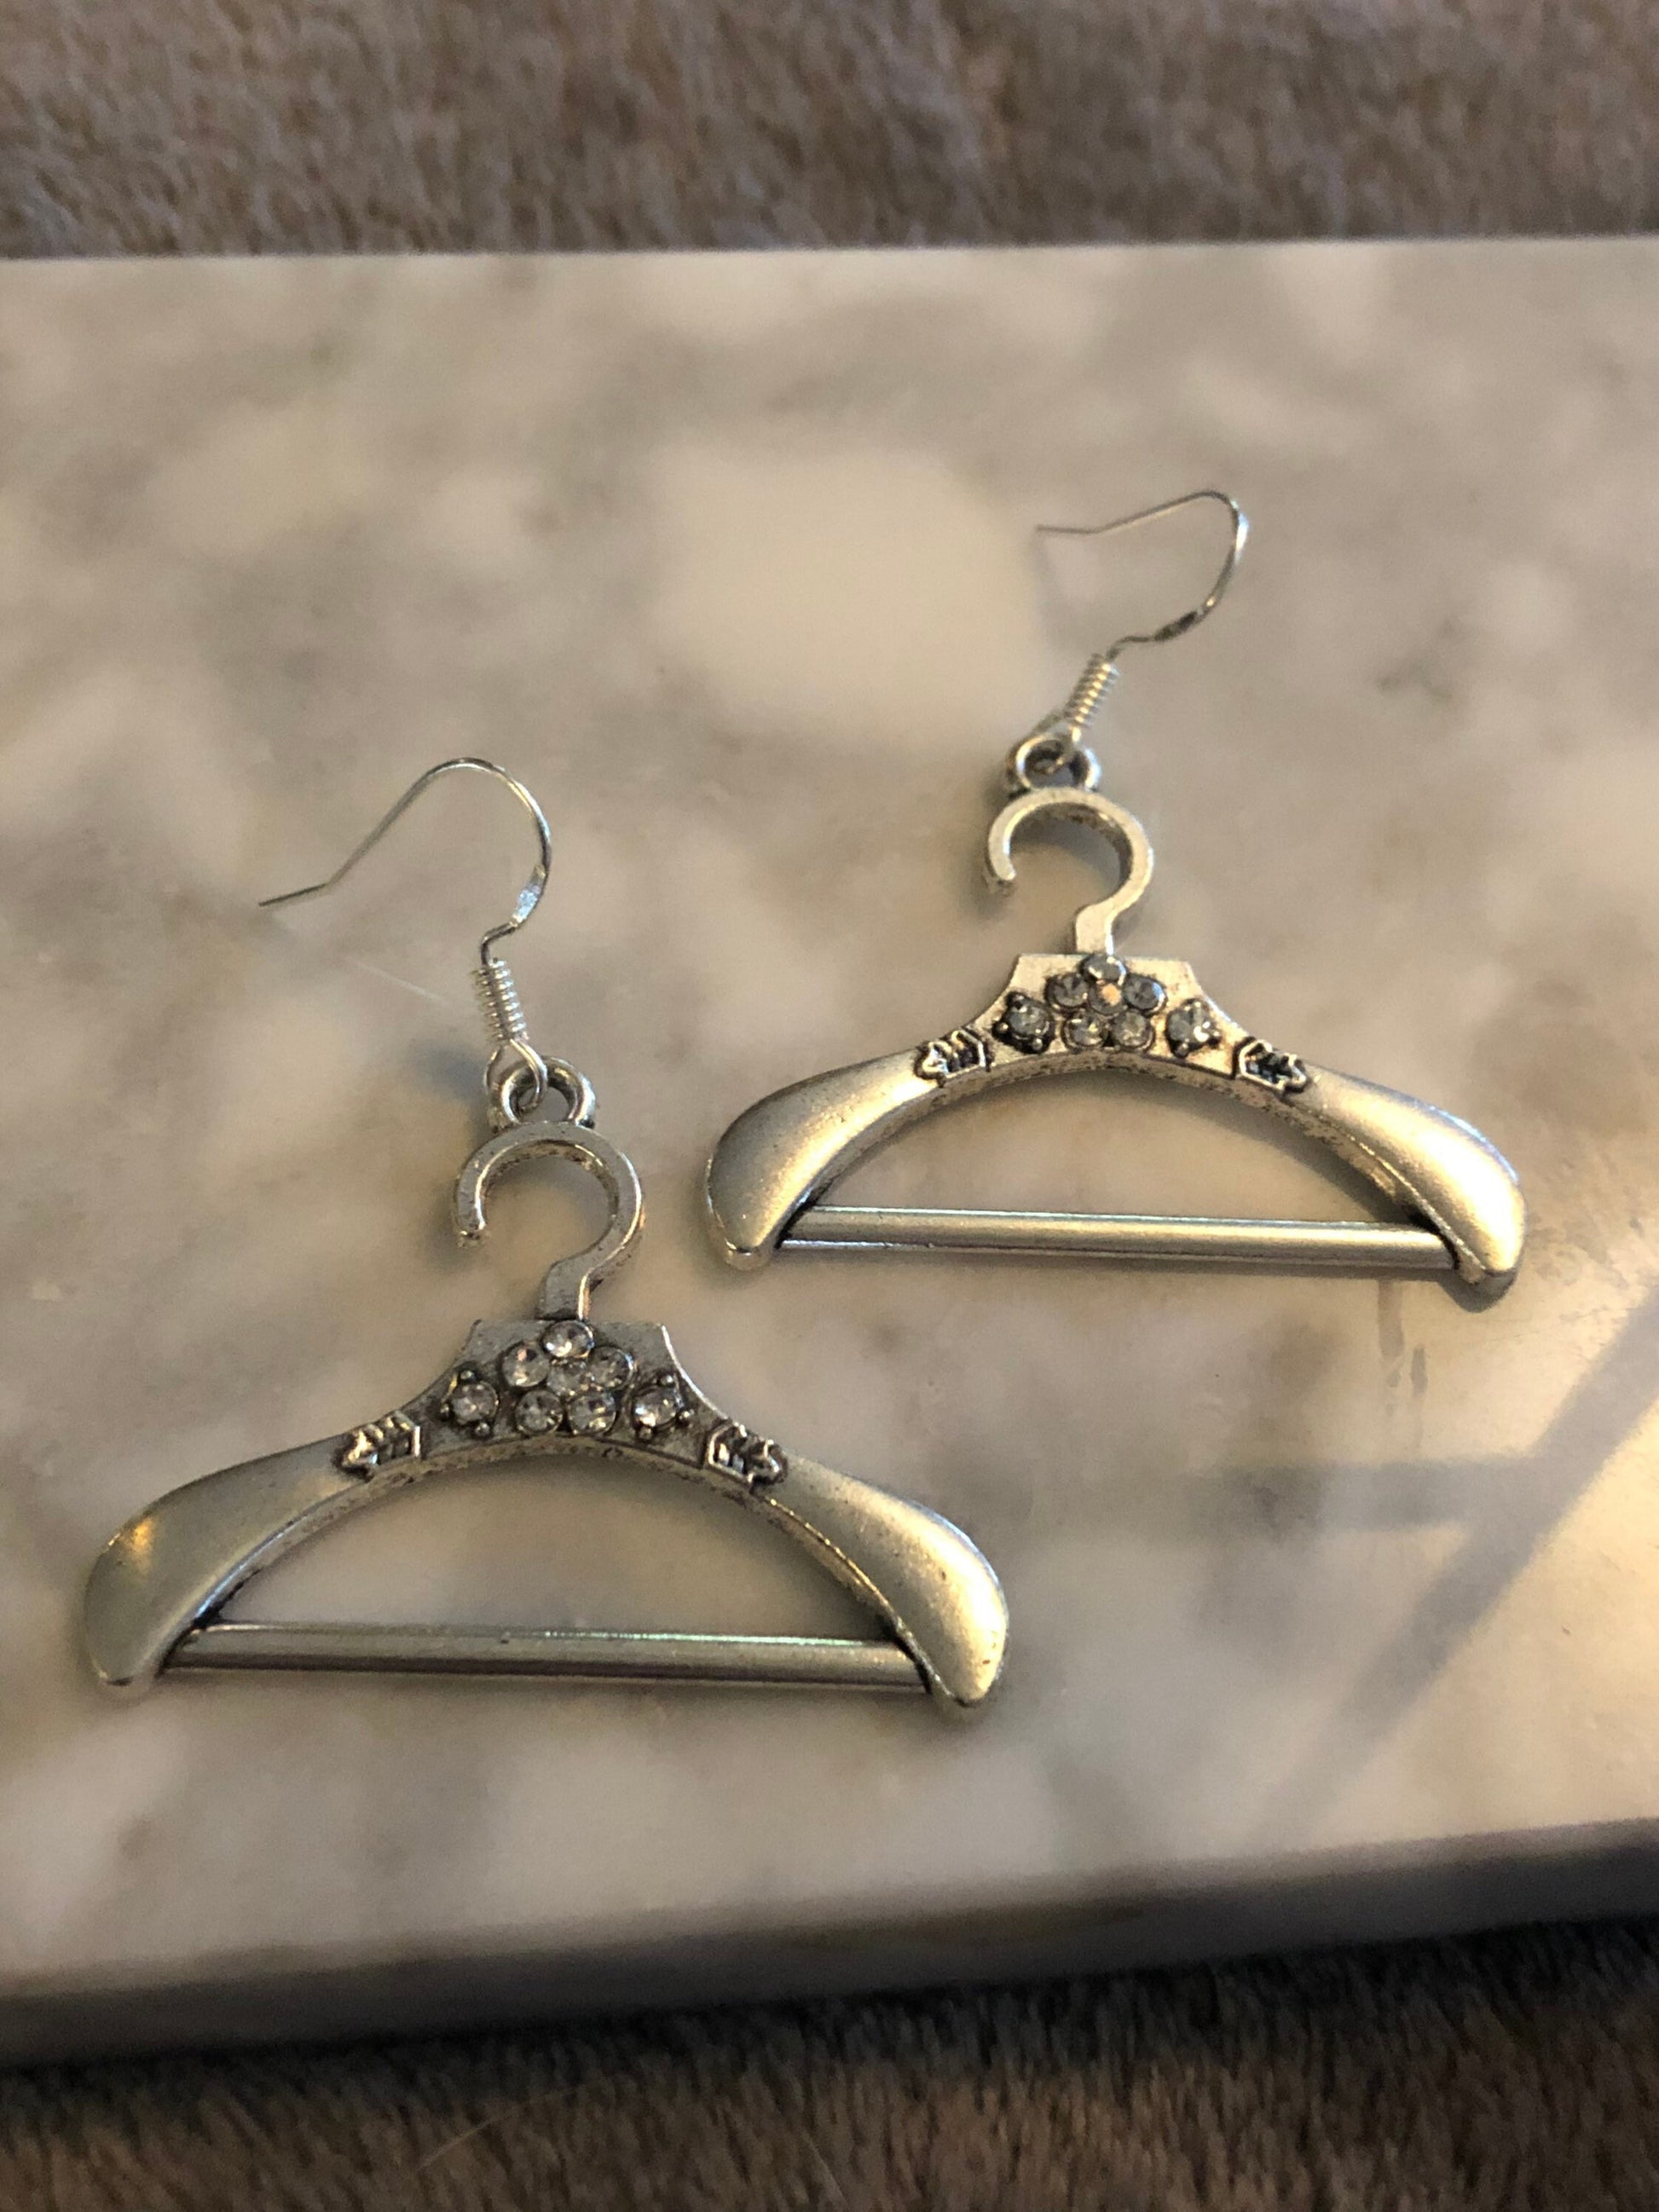 silver tone diamanté coat hanger drop earrings for pierced ears!